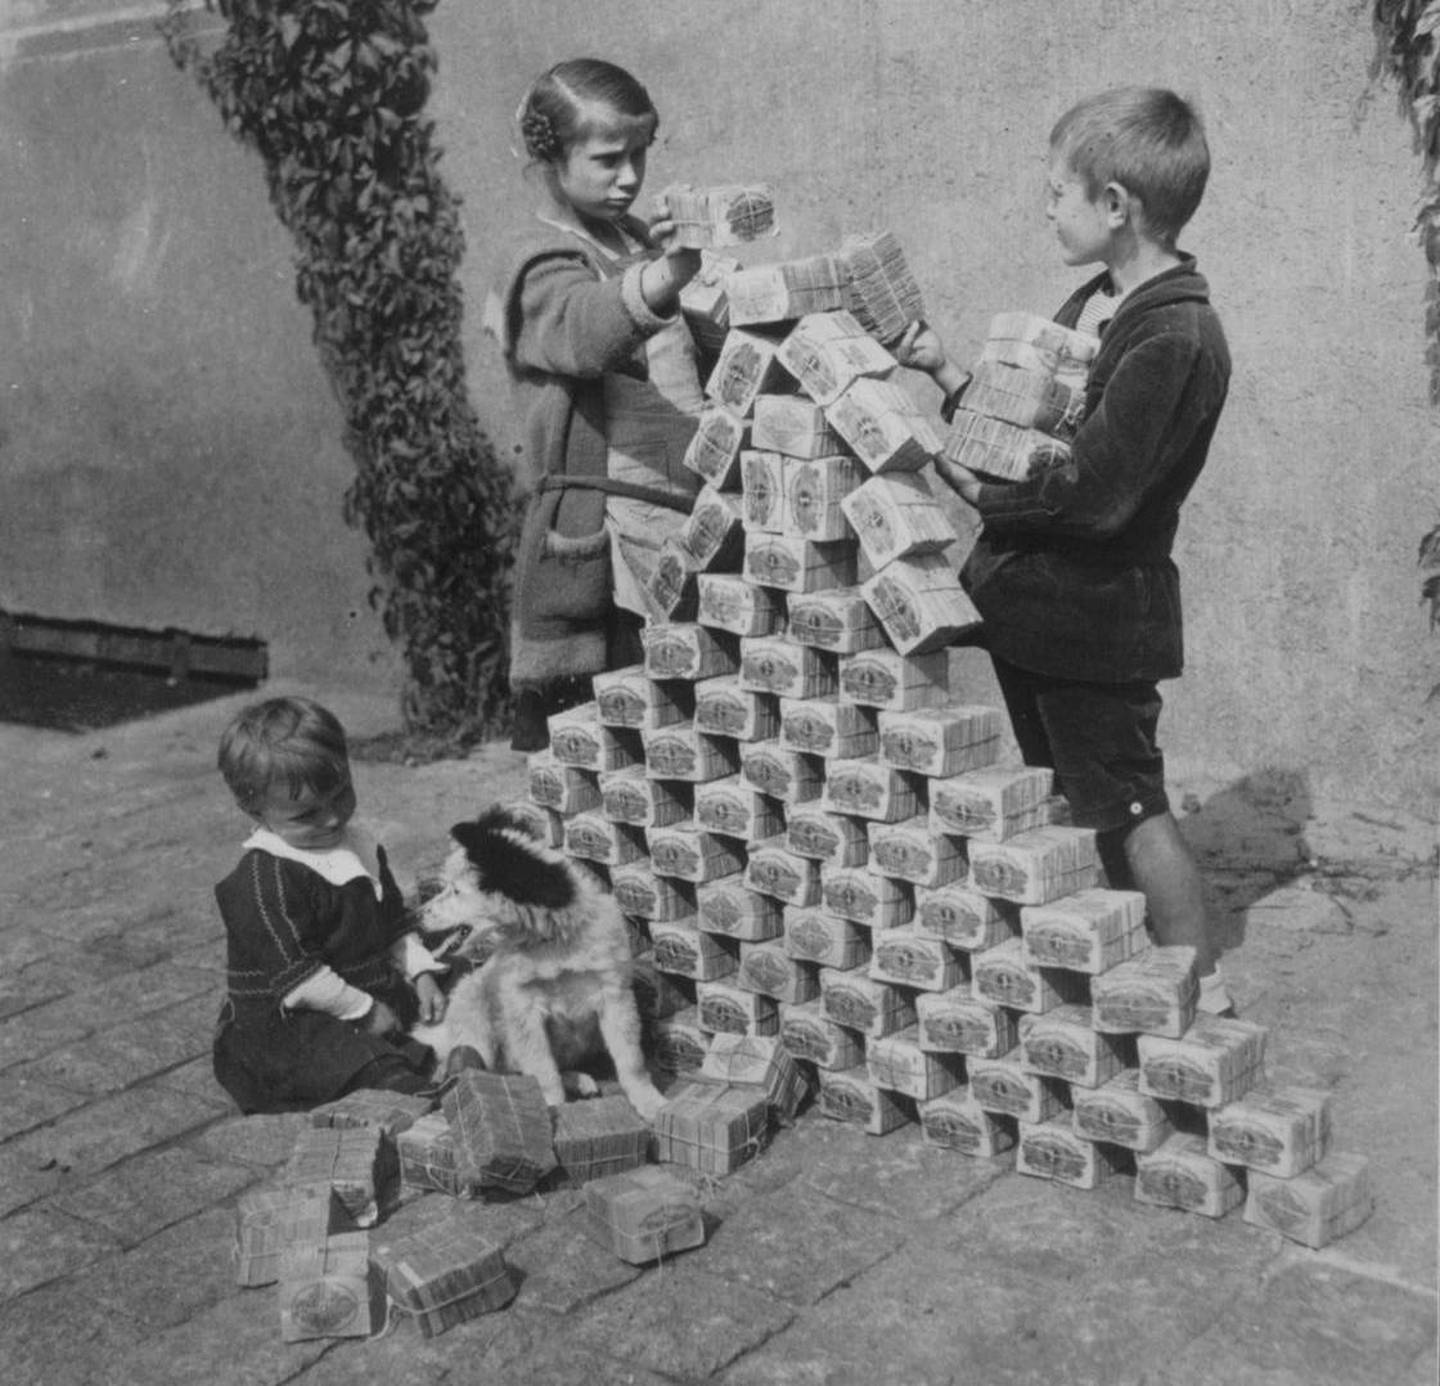 Mellom 1921 og 1923 var det hyperinflasjon i Tyskland. Verdien på tyske mark stupte, slik at folk måtte ha med seg trillebårer med penger for å handle på matbutikken, og barna kunne fritt leke med de verdiløse sedlene.